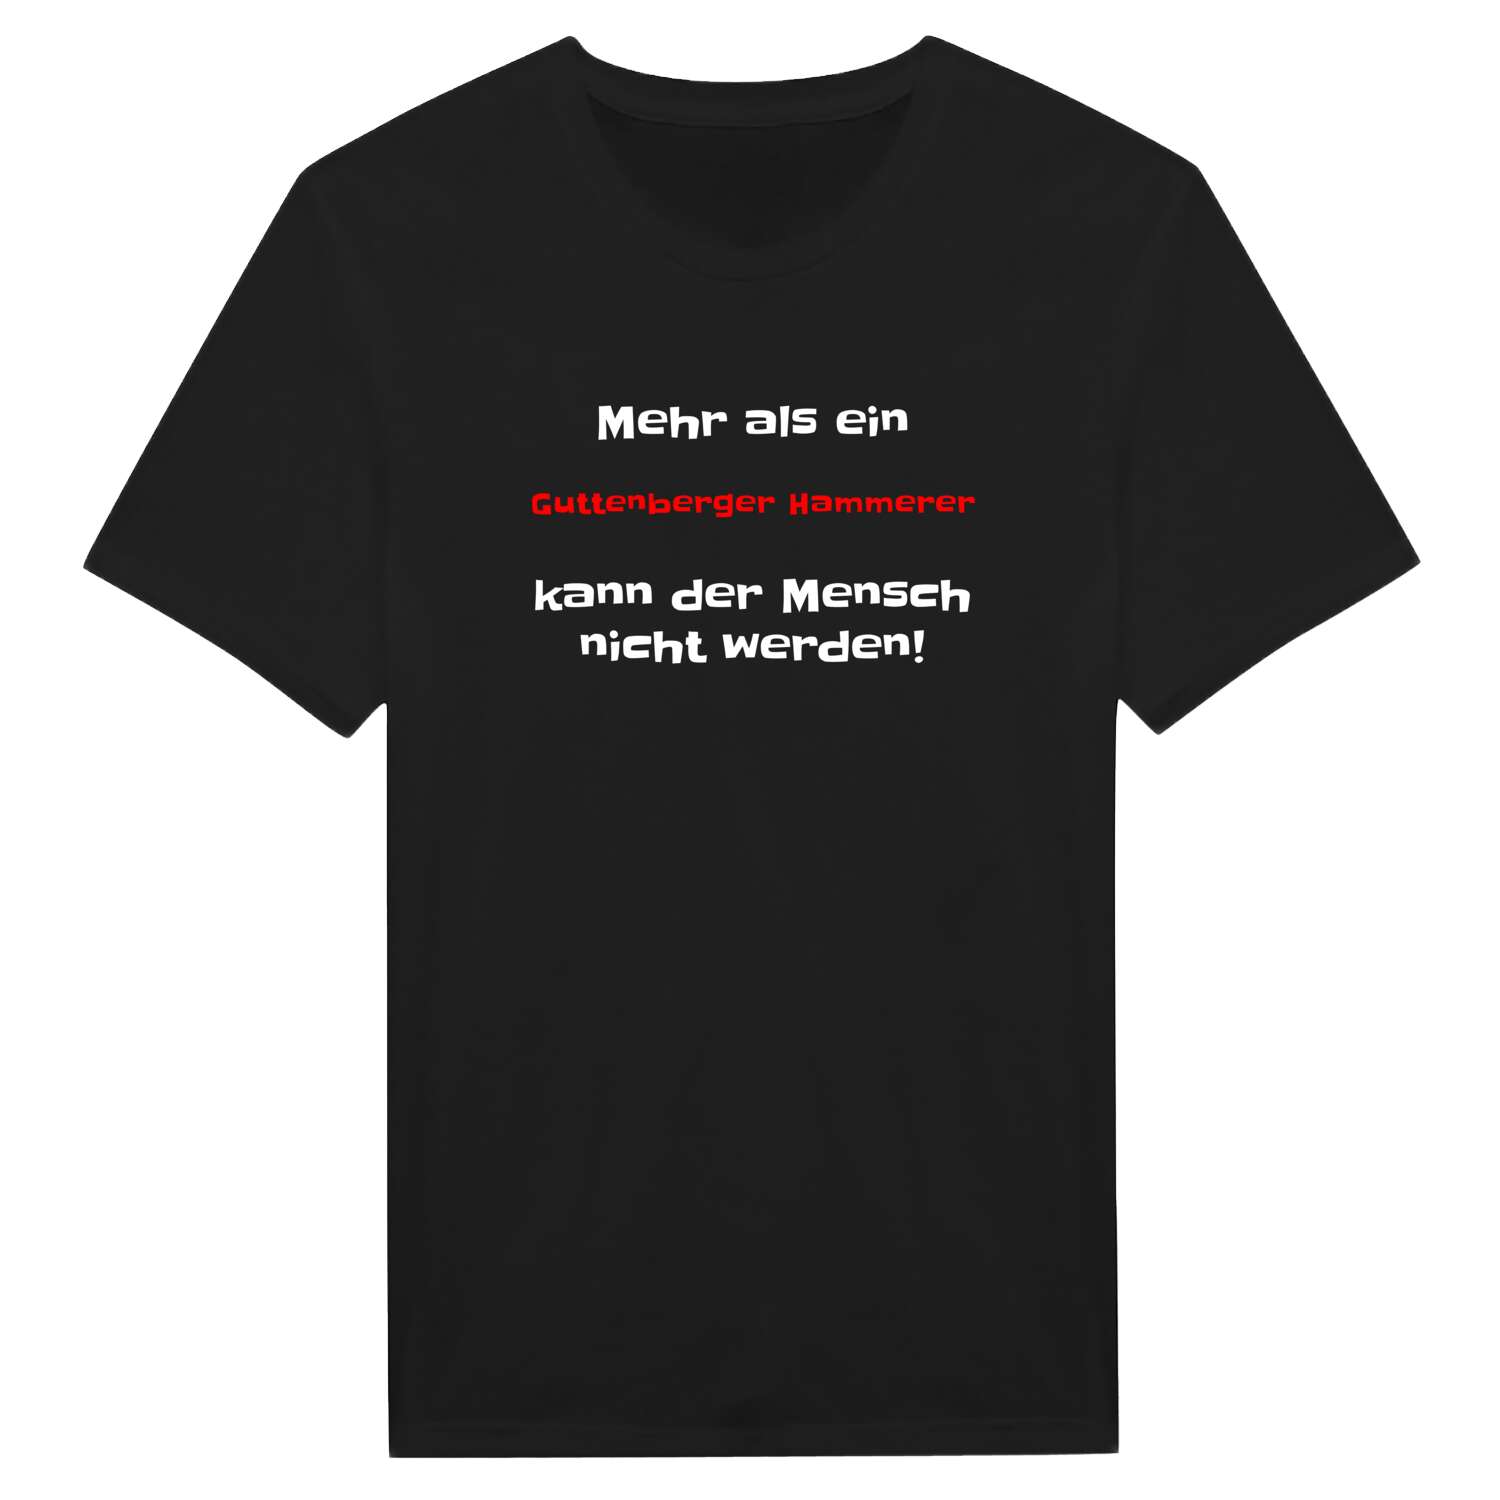 Guttenberger Hammer T-Shirt »Mehr als ein«